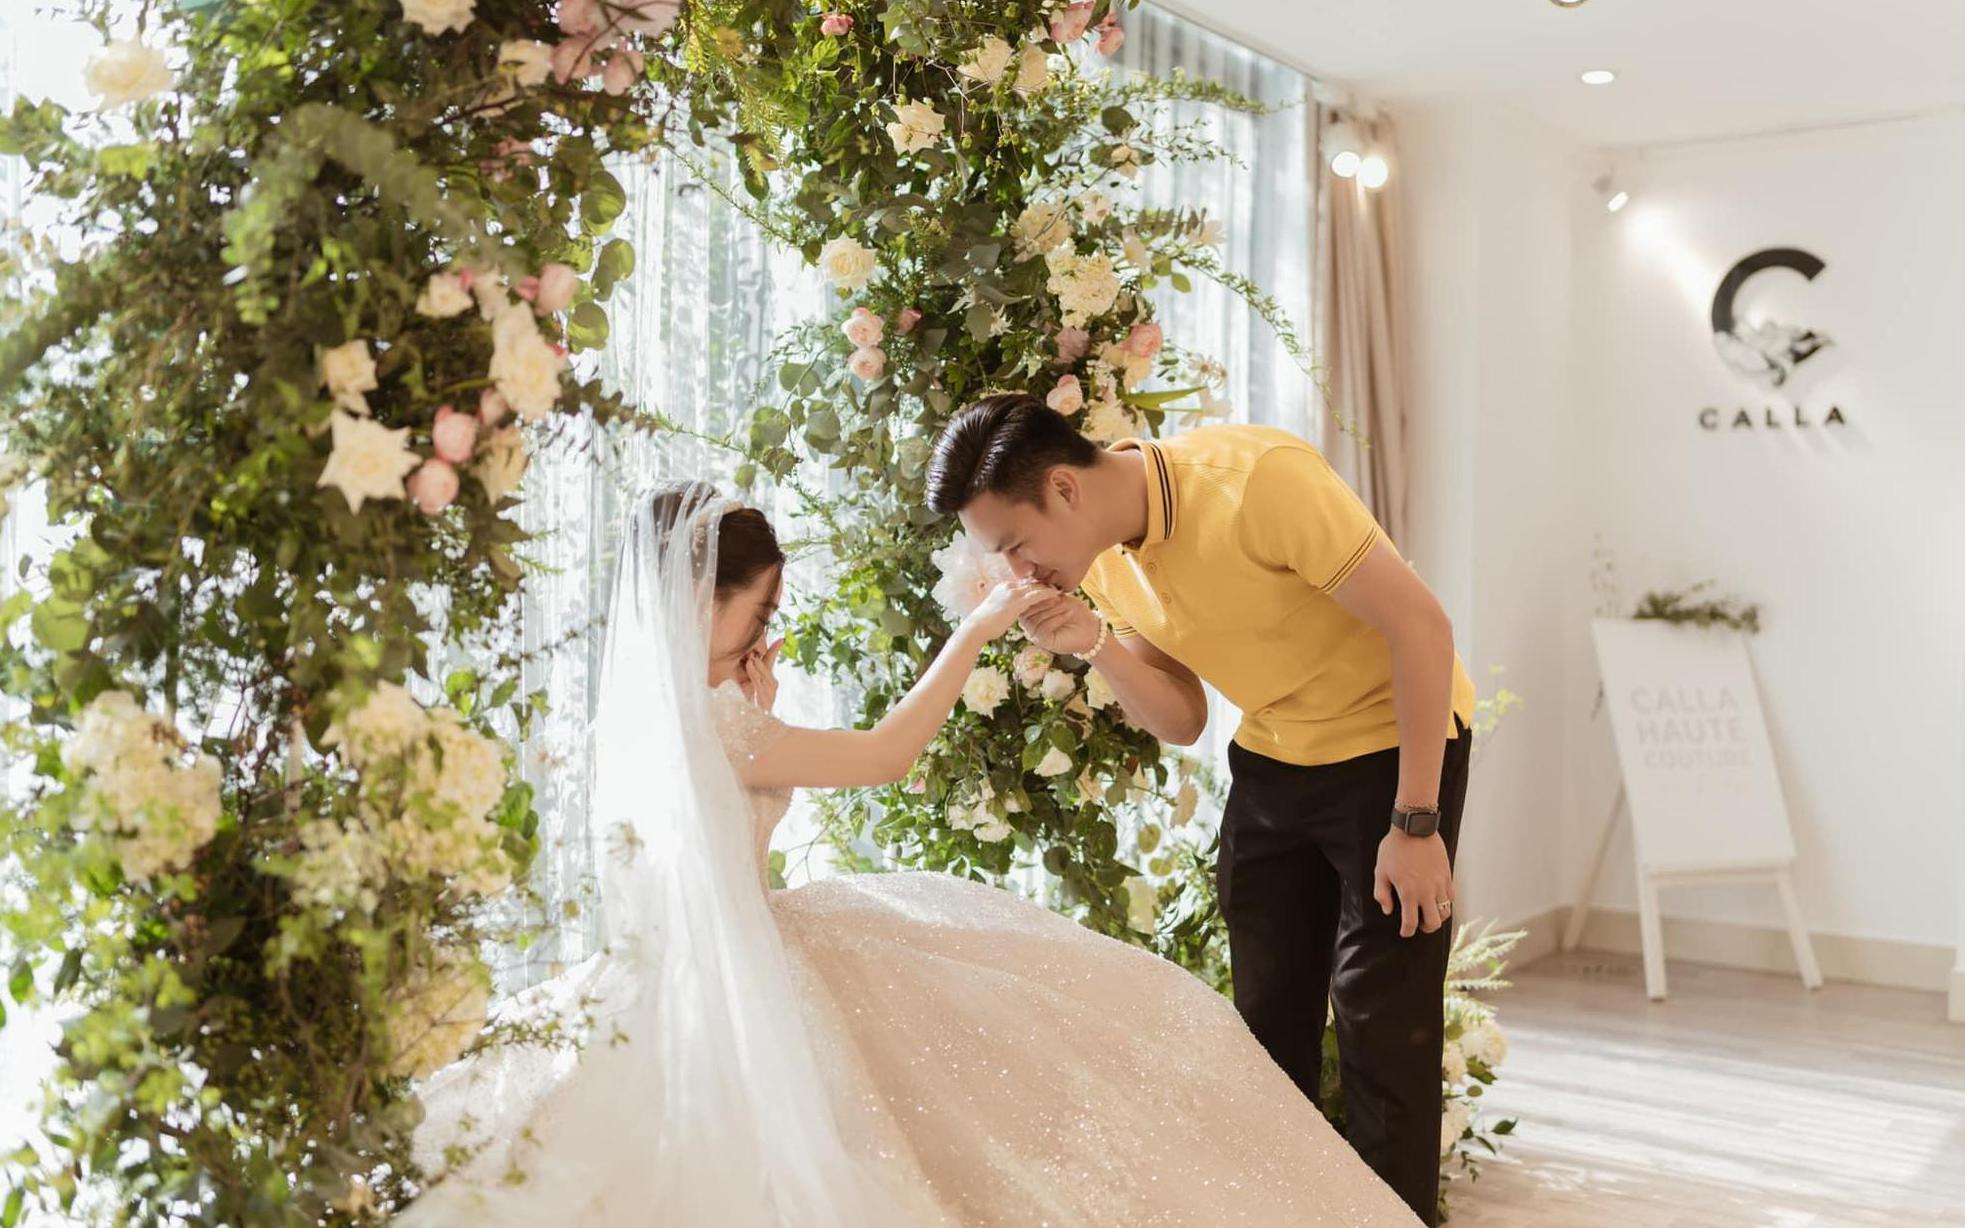 Ngắm lại 3 mẫu váy cưới trong mơ của vợ 3 cầu thủ Duy Mạnh - Thành Chung - Tấn Tài